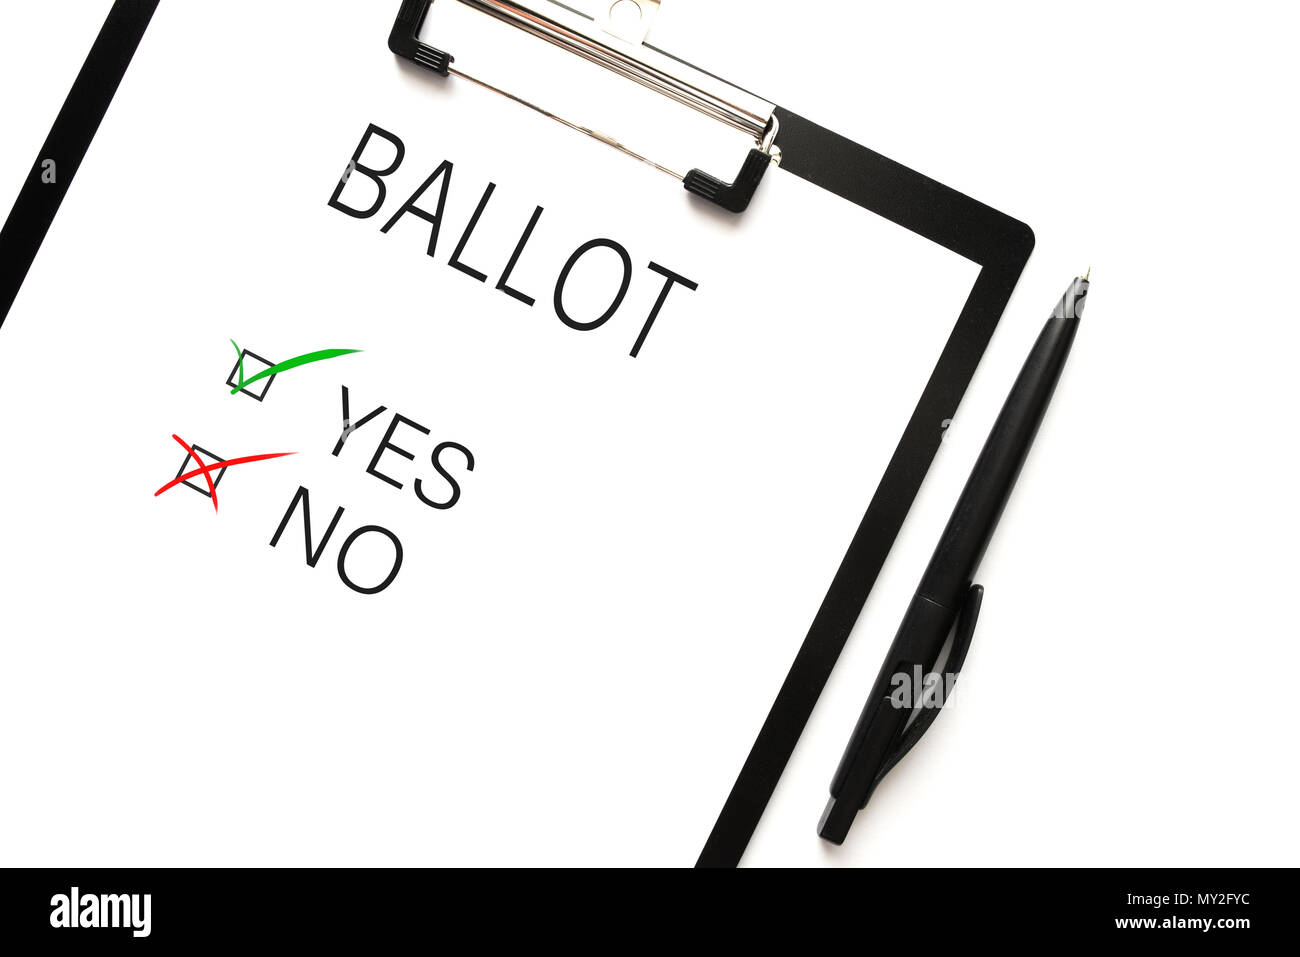 Direttamente sopra il colpo di ballottaggio con scelta sì o no sulla clipboard contro uno sfondo bianco Foto Stock